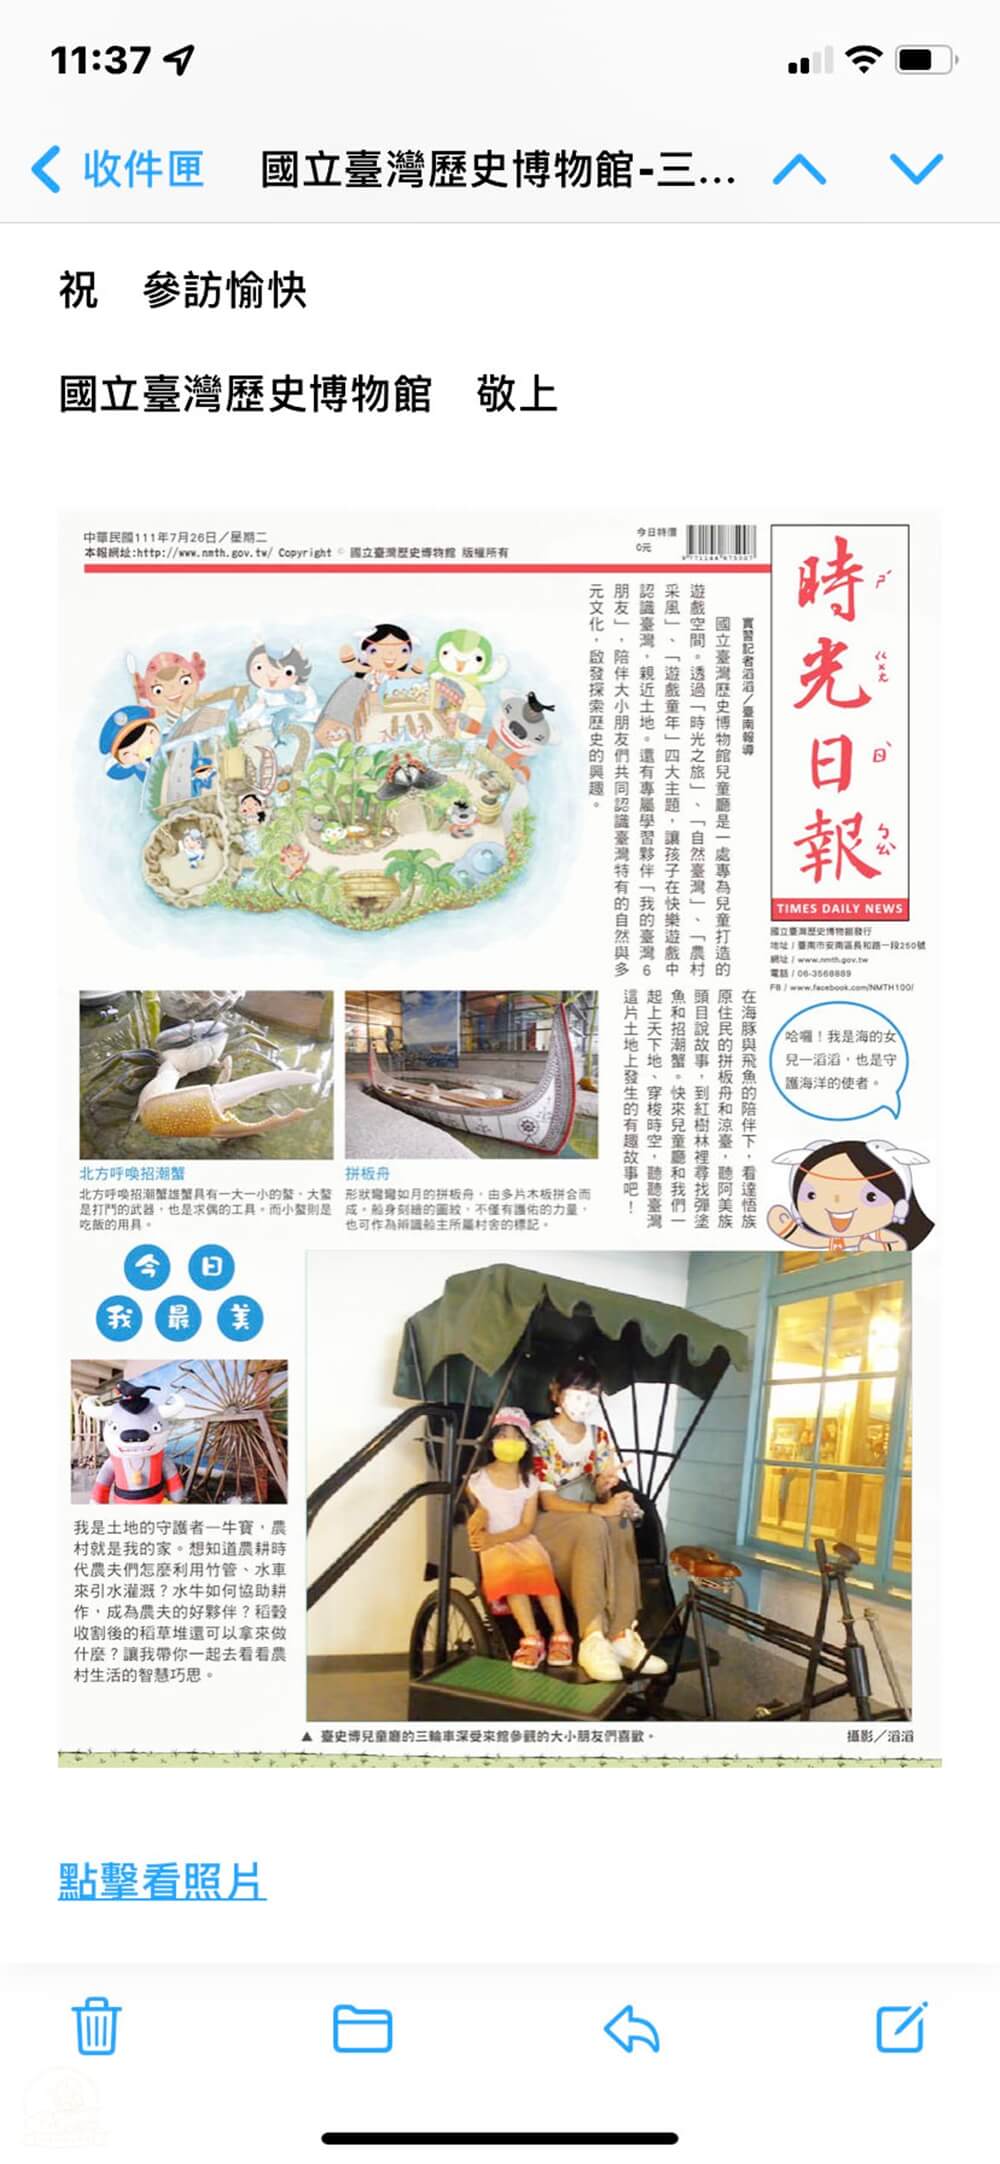 台灣歷史博物館報紙